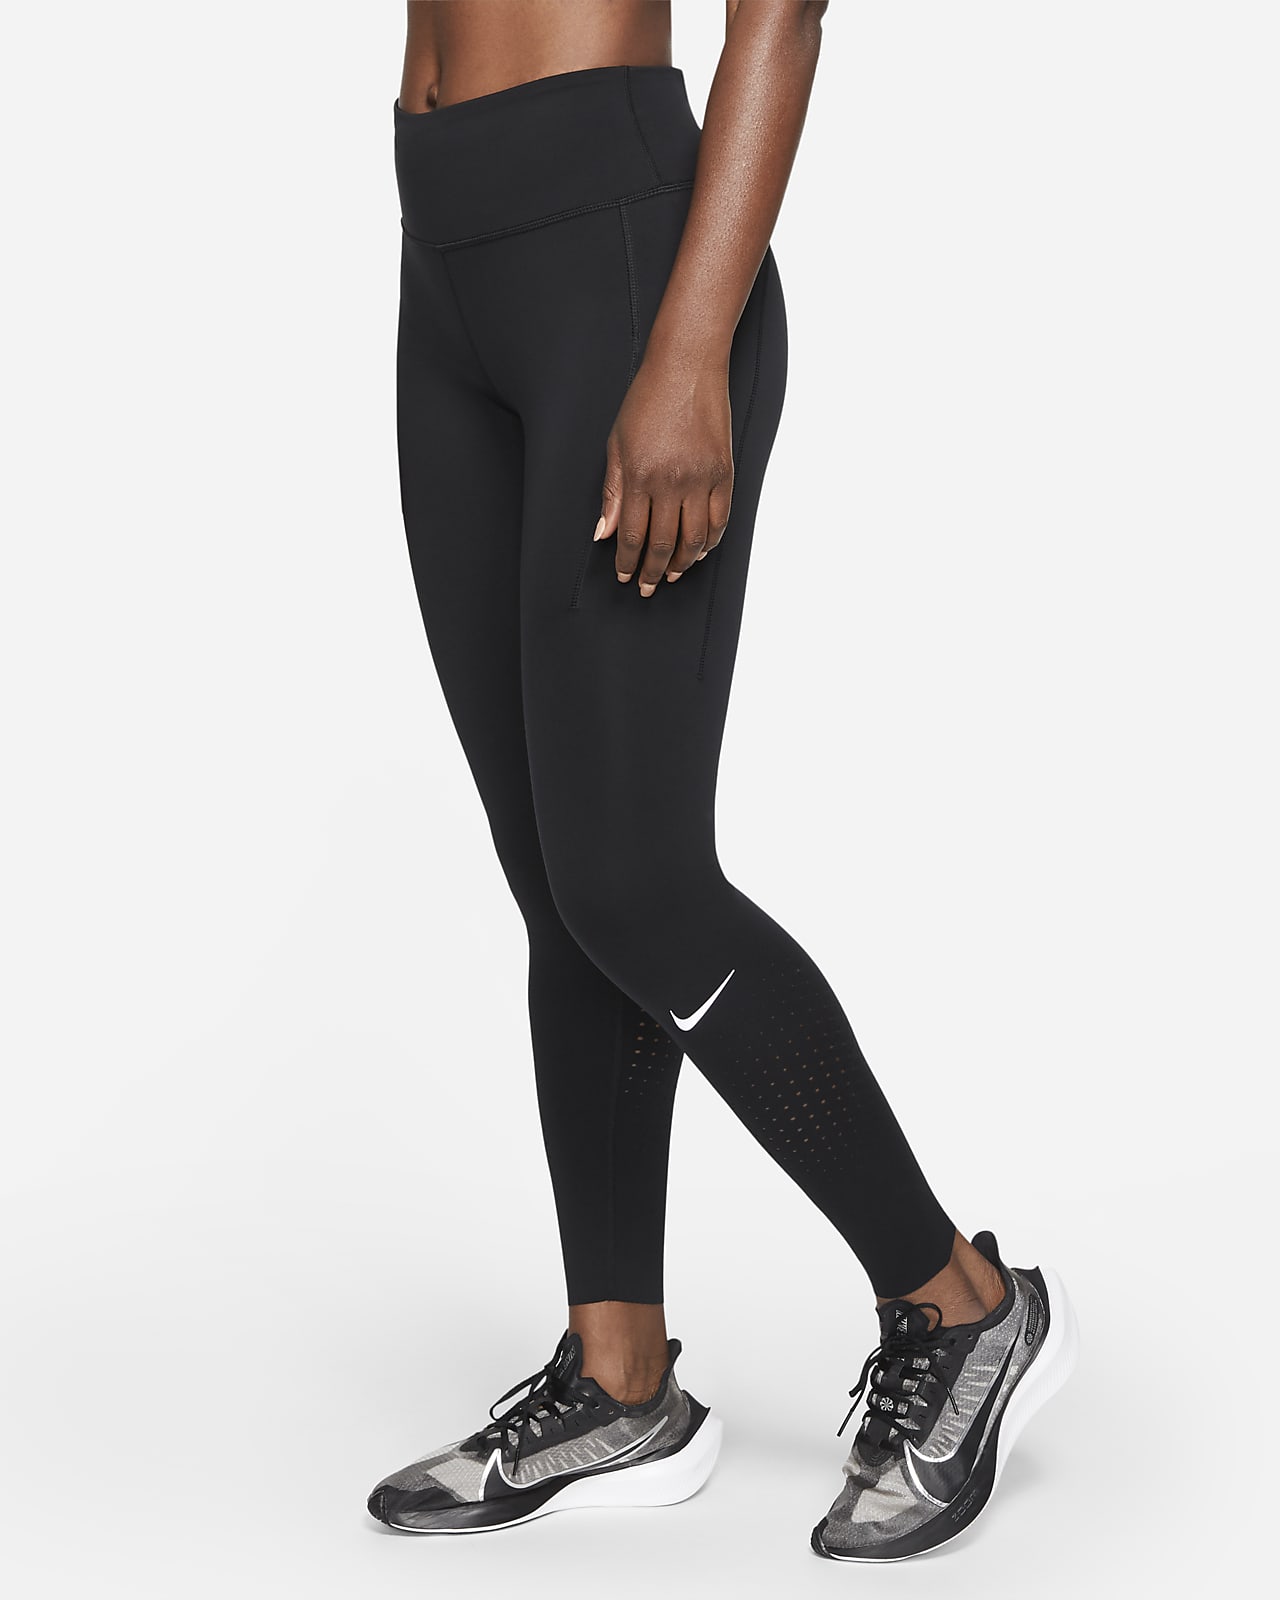 Γυναικείο κολάν μεσαίου ύψους με τσέπη Nike Epic Luxe